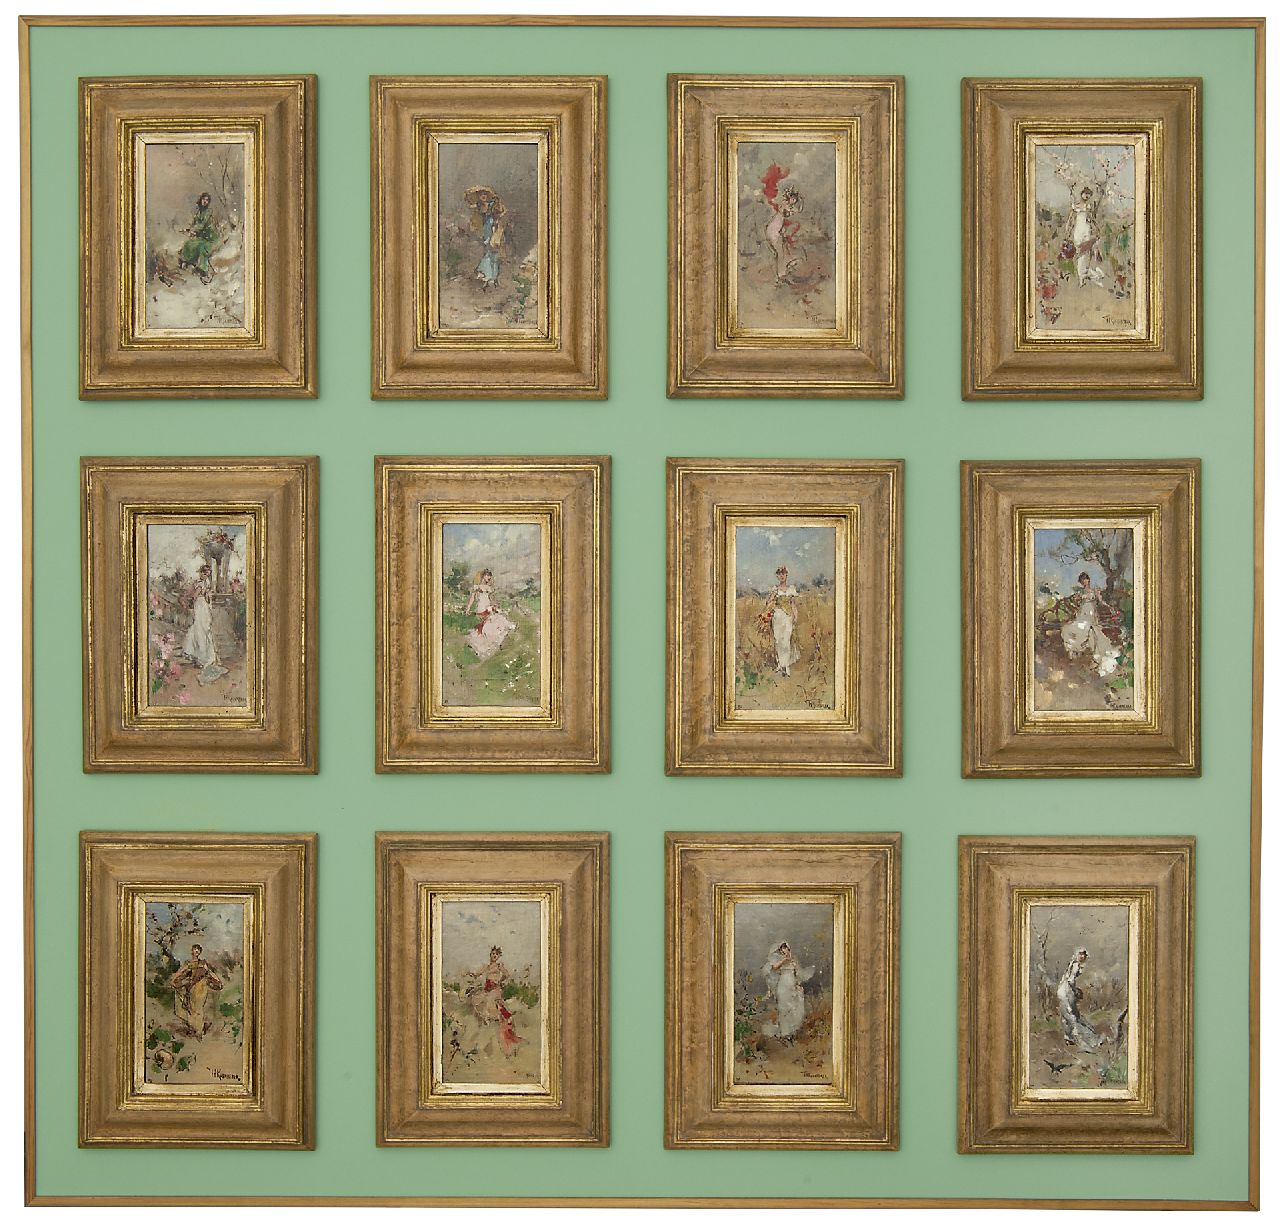 Kaemmerer F.H.  | Frederik Hendrik Kaemmerer | Schilderijen te koop aangeboden | Maanden van het jaar, sterrenbeeld Steenbok (tezamen met 15949 t/m 15960), olieverf op doek op schildersboard 18,5 x 10,3 cm, gesigneerd rechtsonder